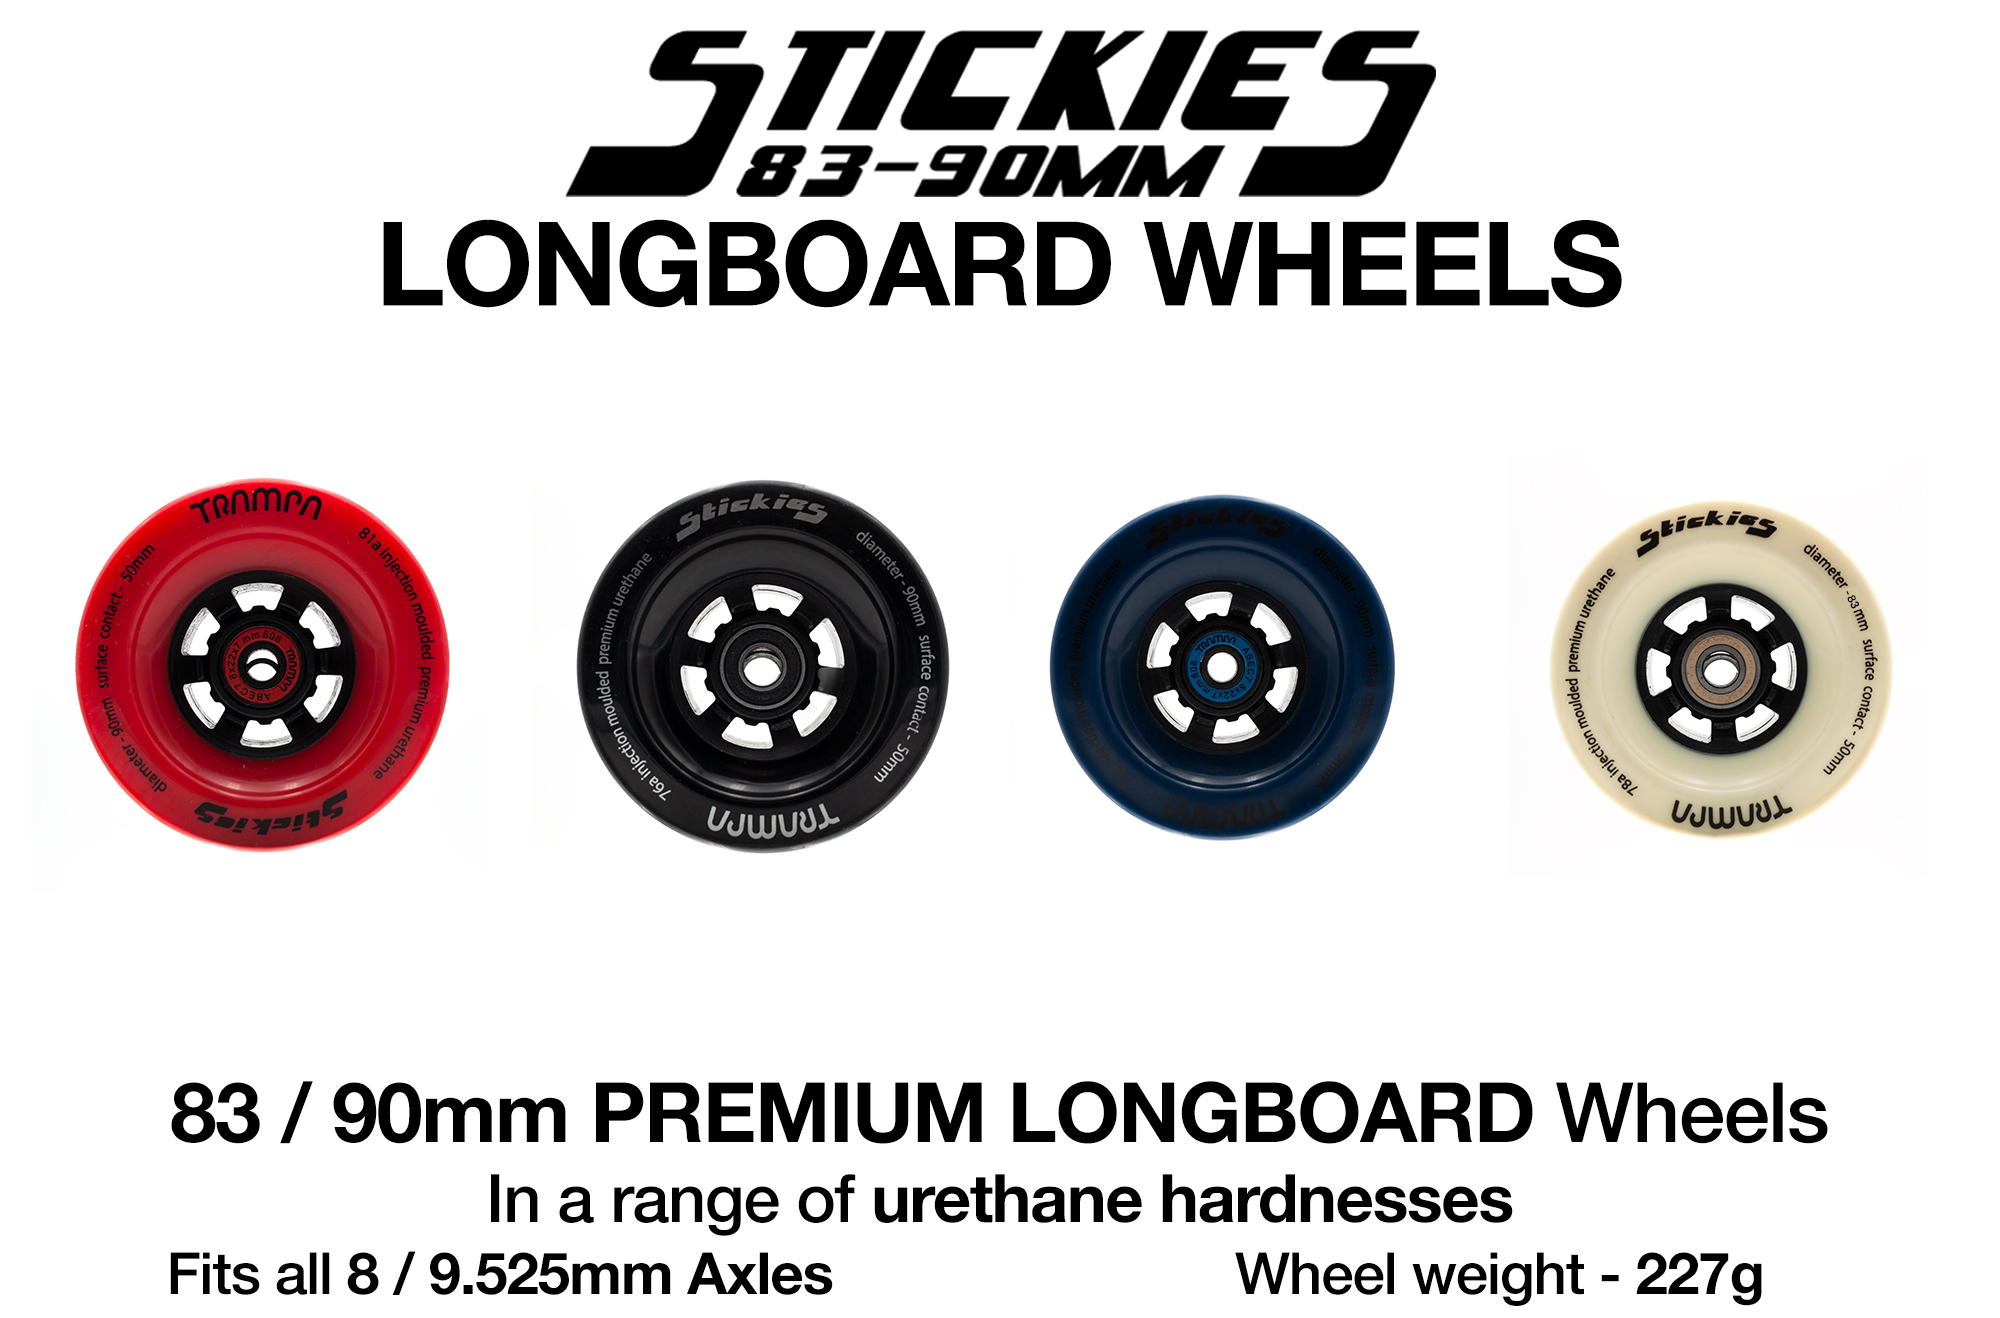 66T TRAMPA Wheel Hub Gear Mountain Board Electric Skateboard Mountainboard MBS 